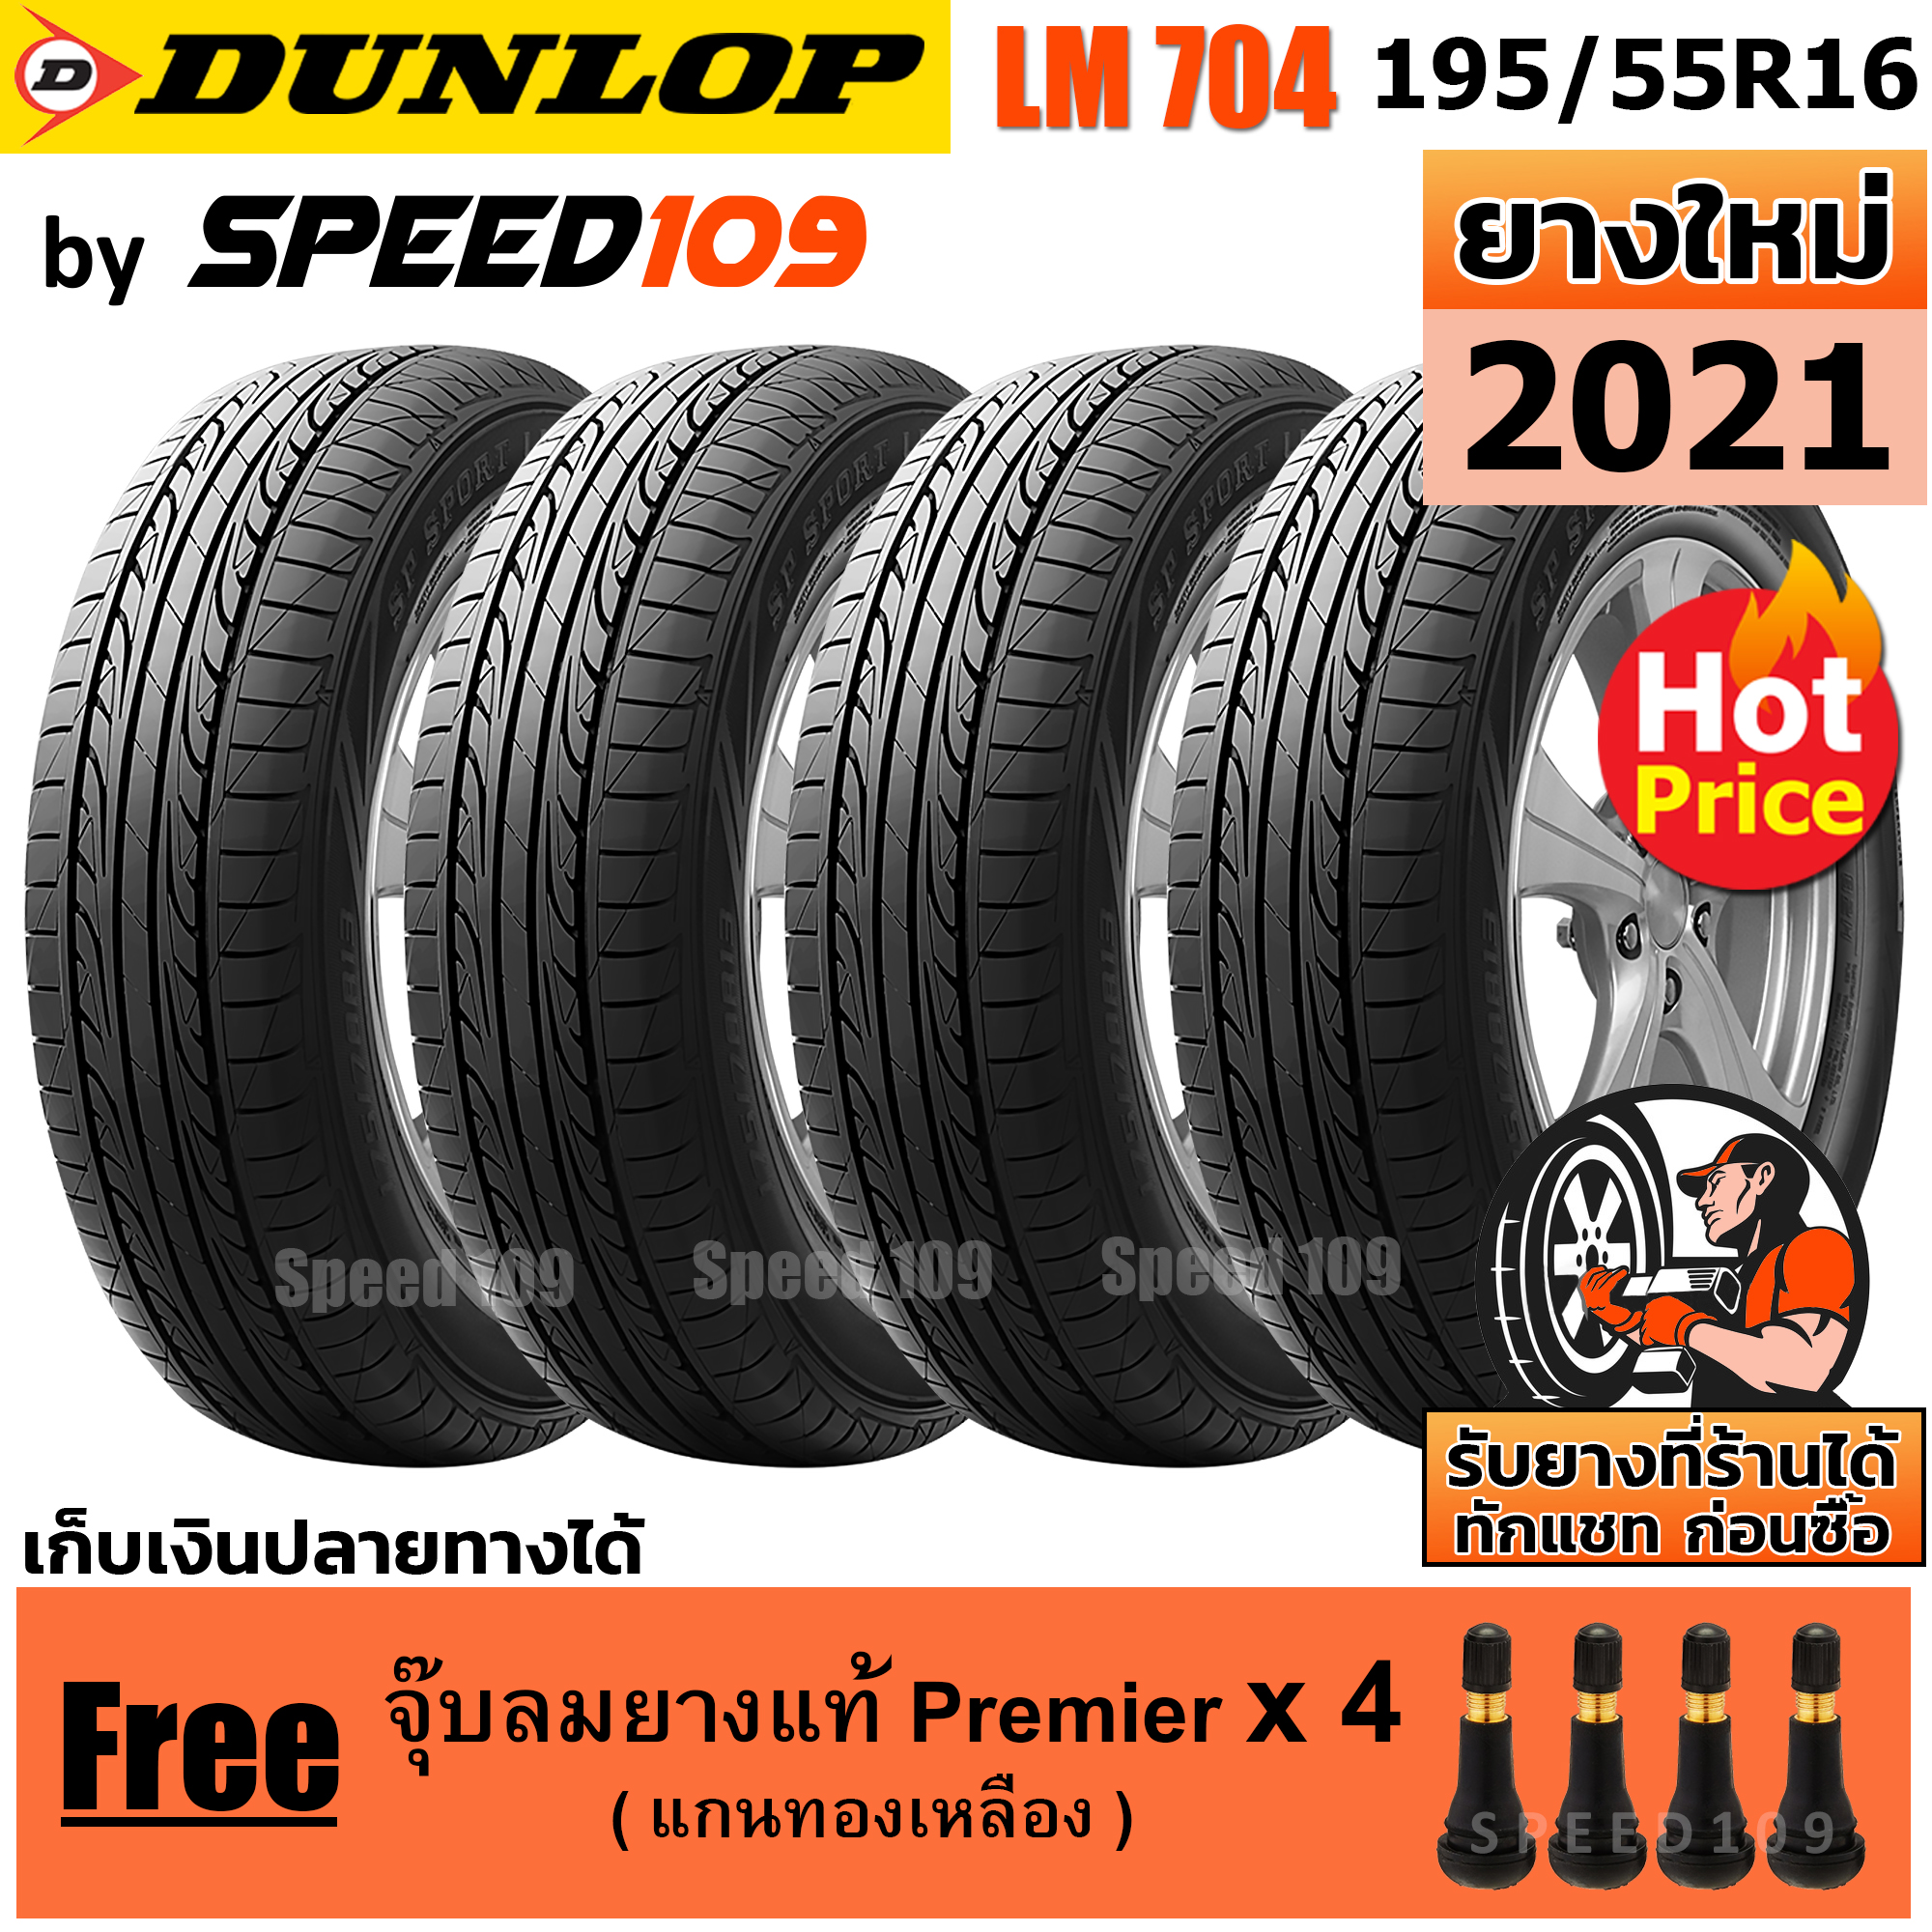 DUNLOP ยางรถยนต์ ขอบ 16 ขนาด 195/55R16 รุ่น SP SPORT LM704 - 4 เส้น (ปี 2021)